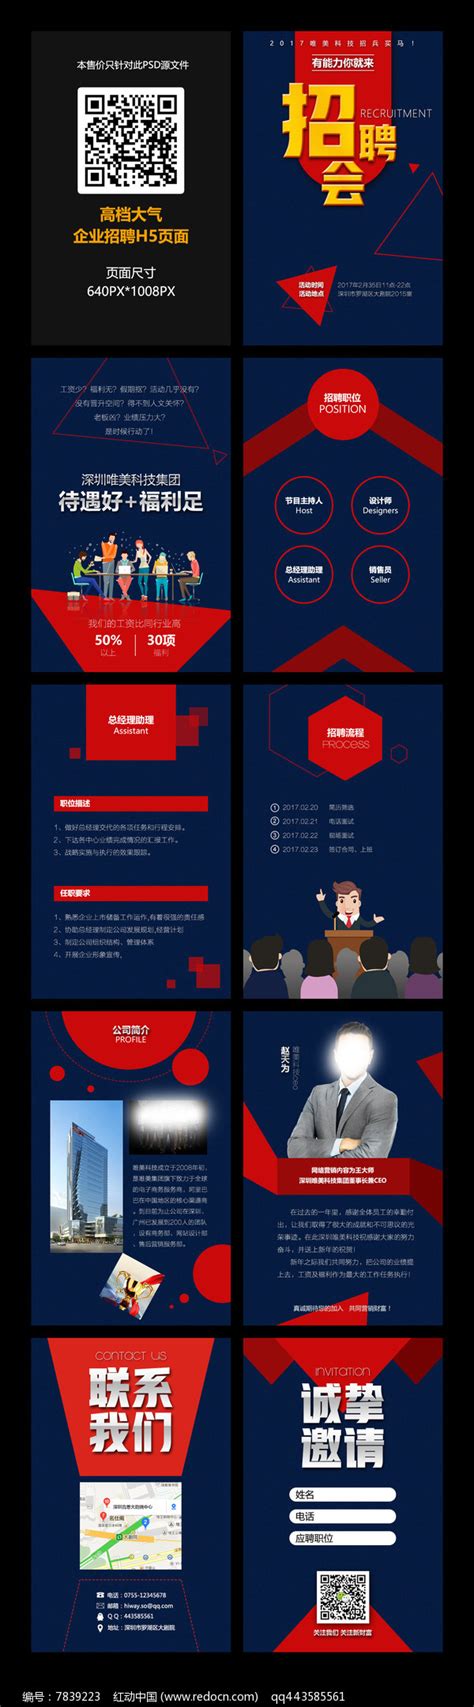 红色商务创意h5招聘模板设计图片下载_红动中国